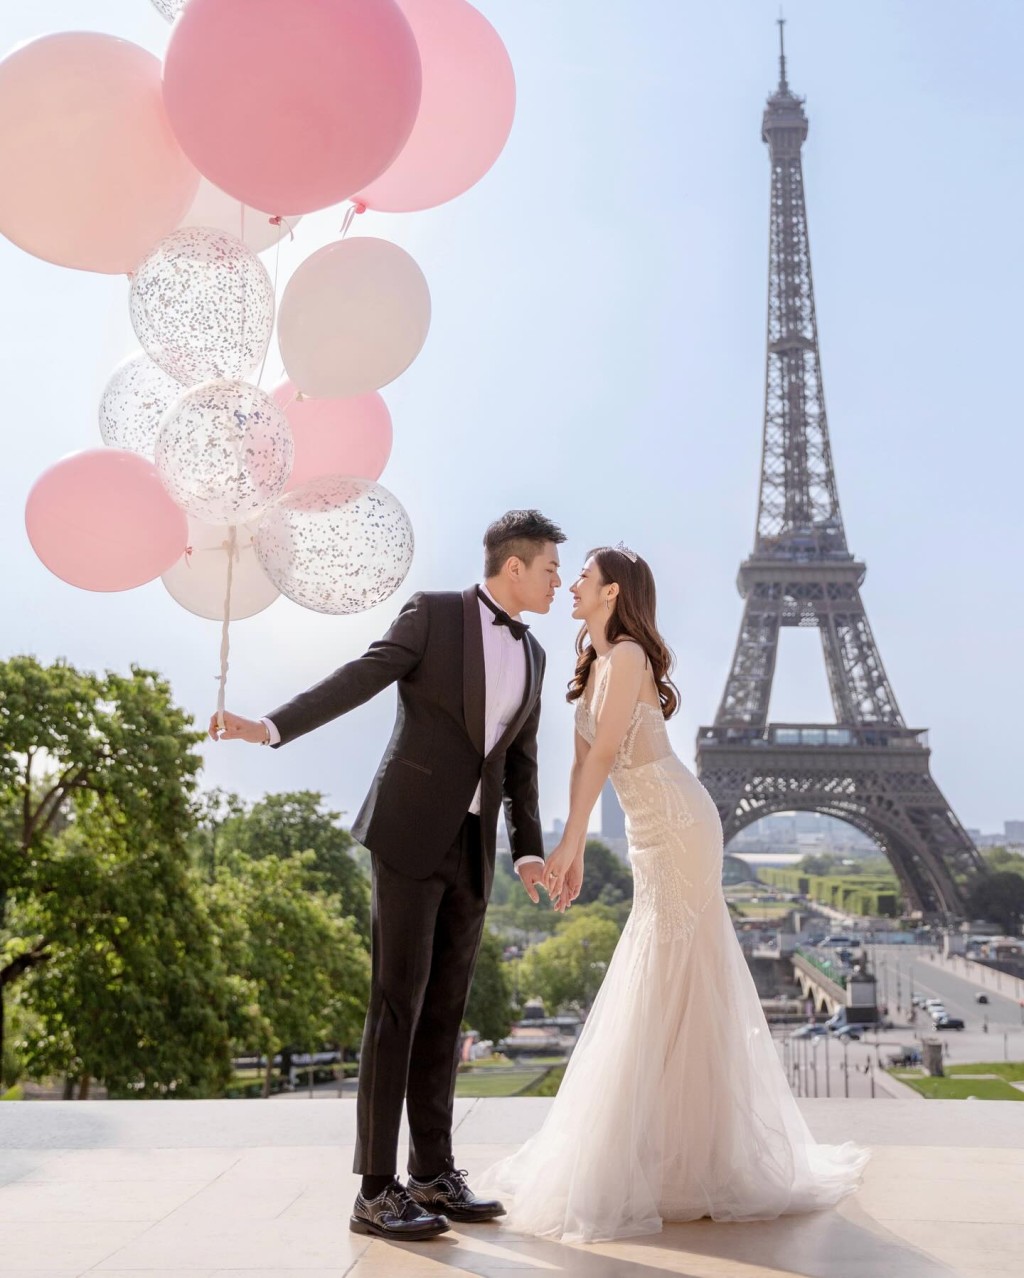 何依婷社交平台貼上在巴黎的婚照。